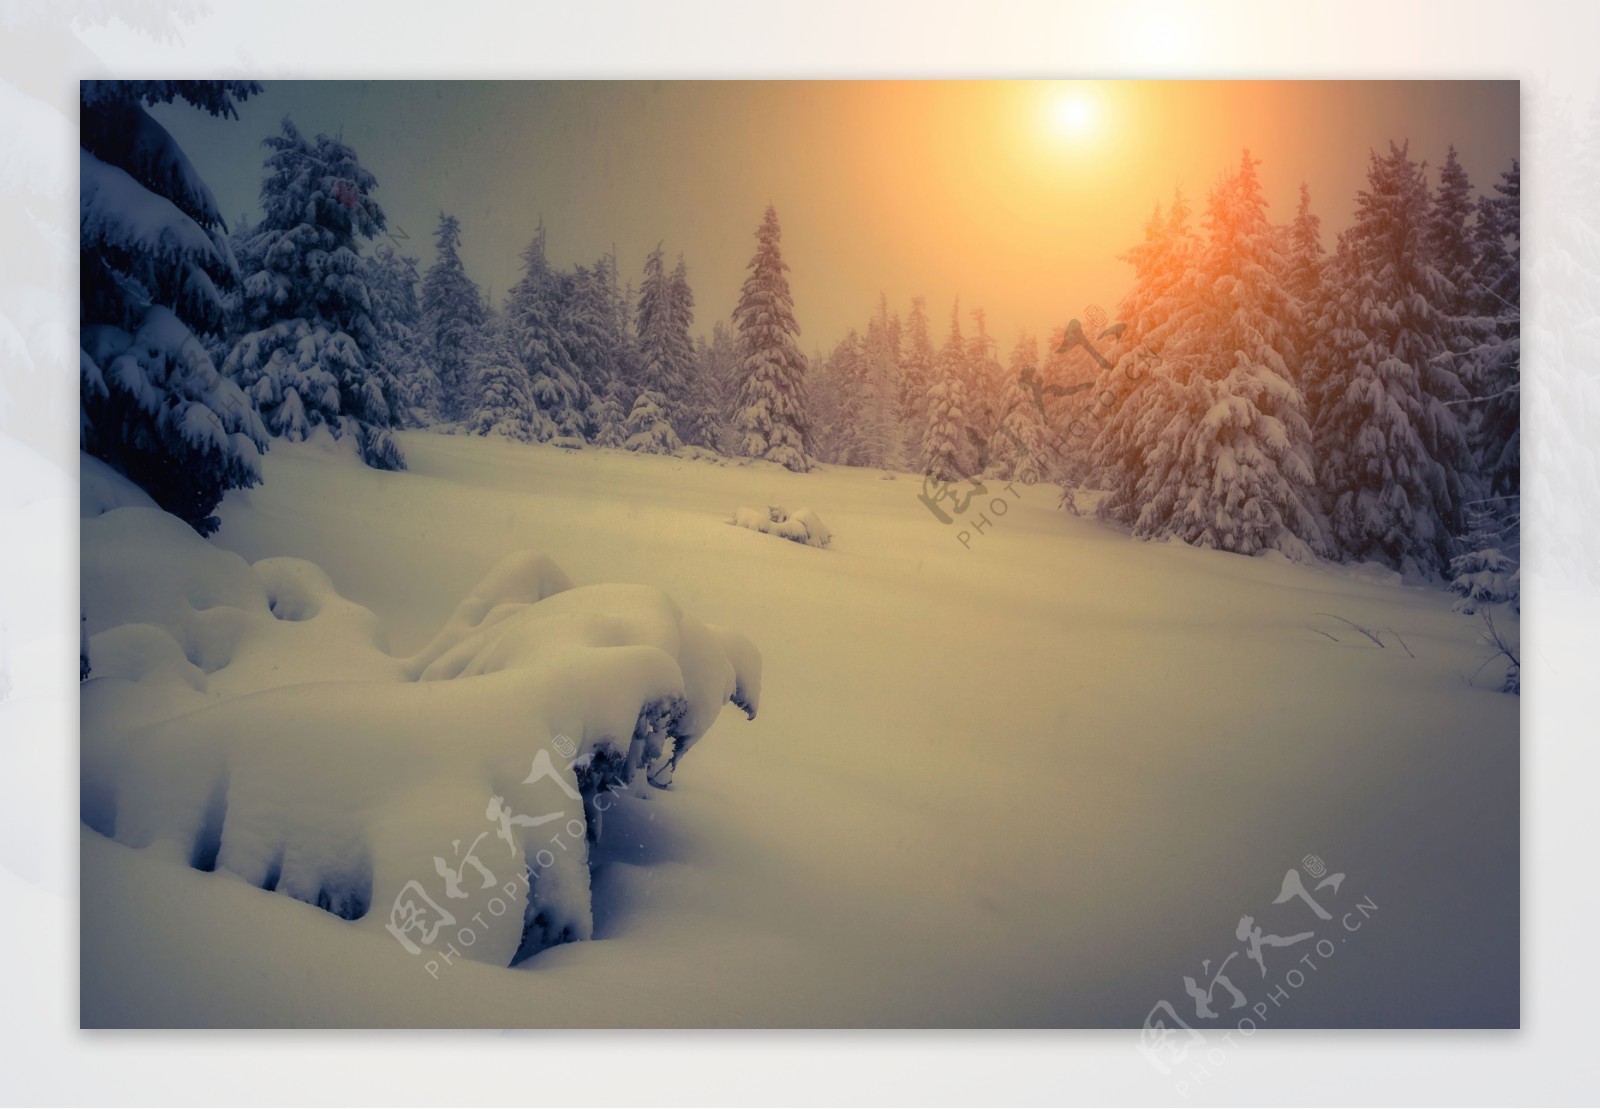 夕阳下的雪松林图片